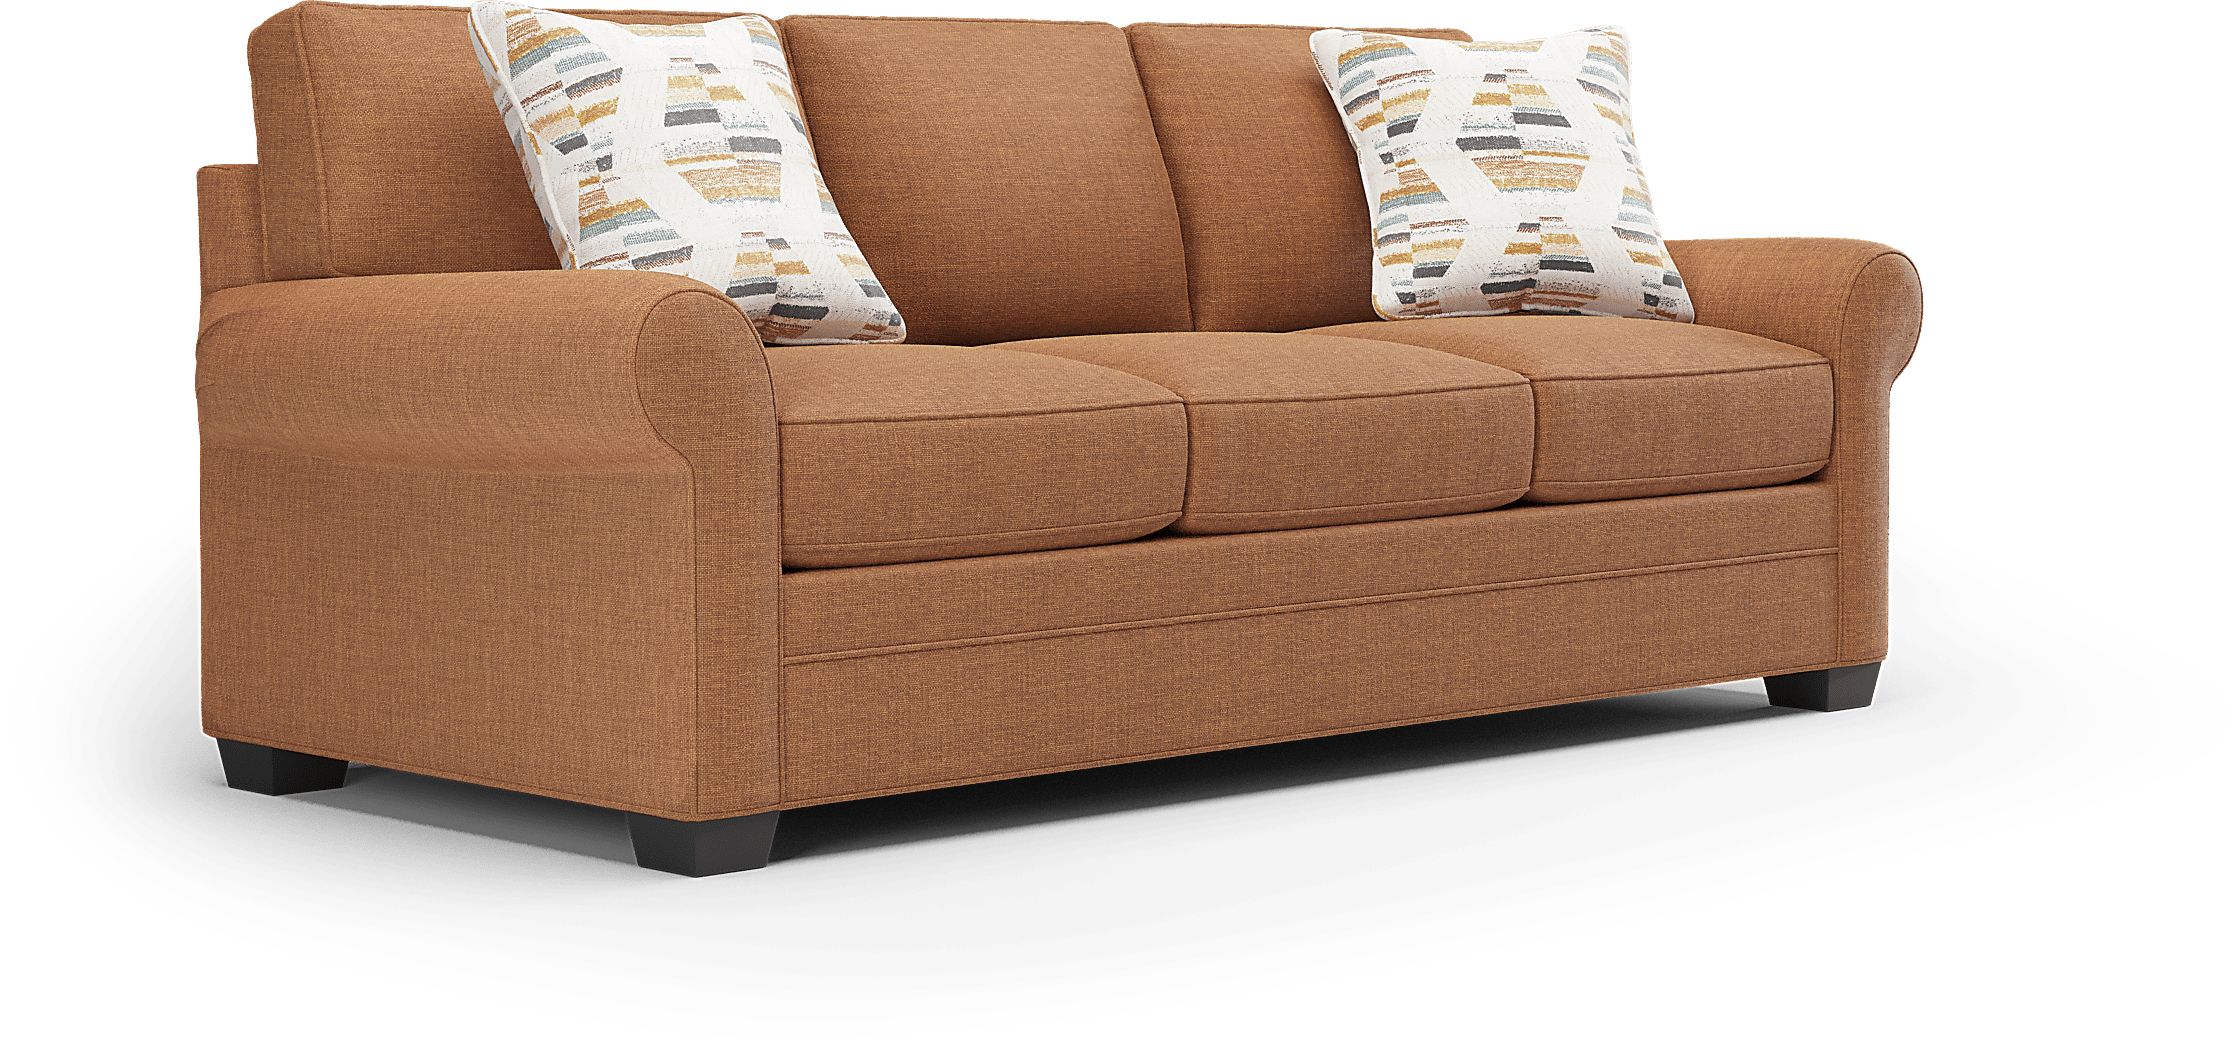 Cindy Crawford Home Bellingham Russet Textured Gel Foam Sleeper Sofa